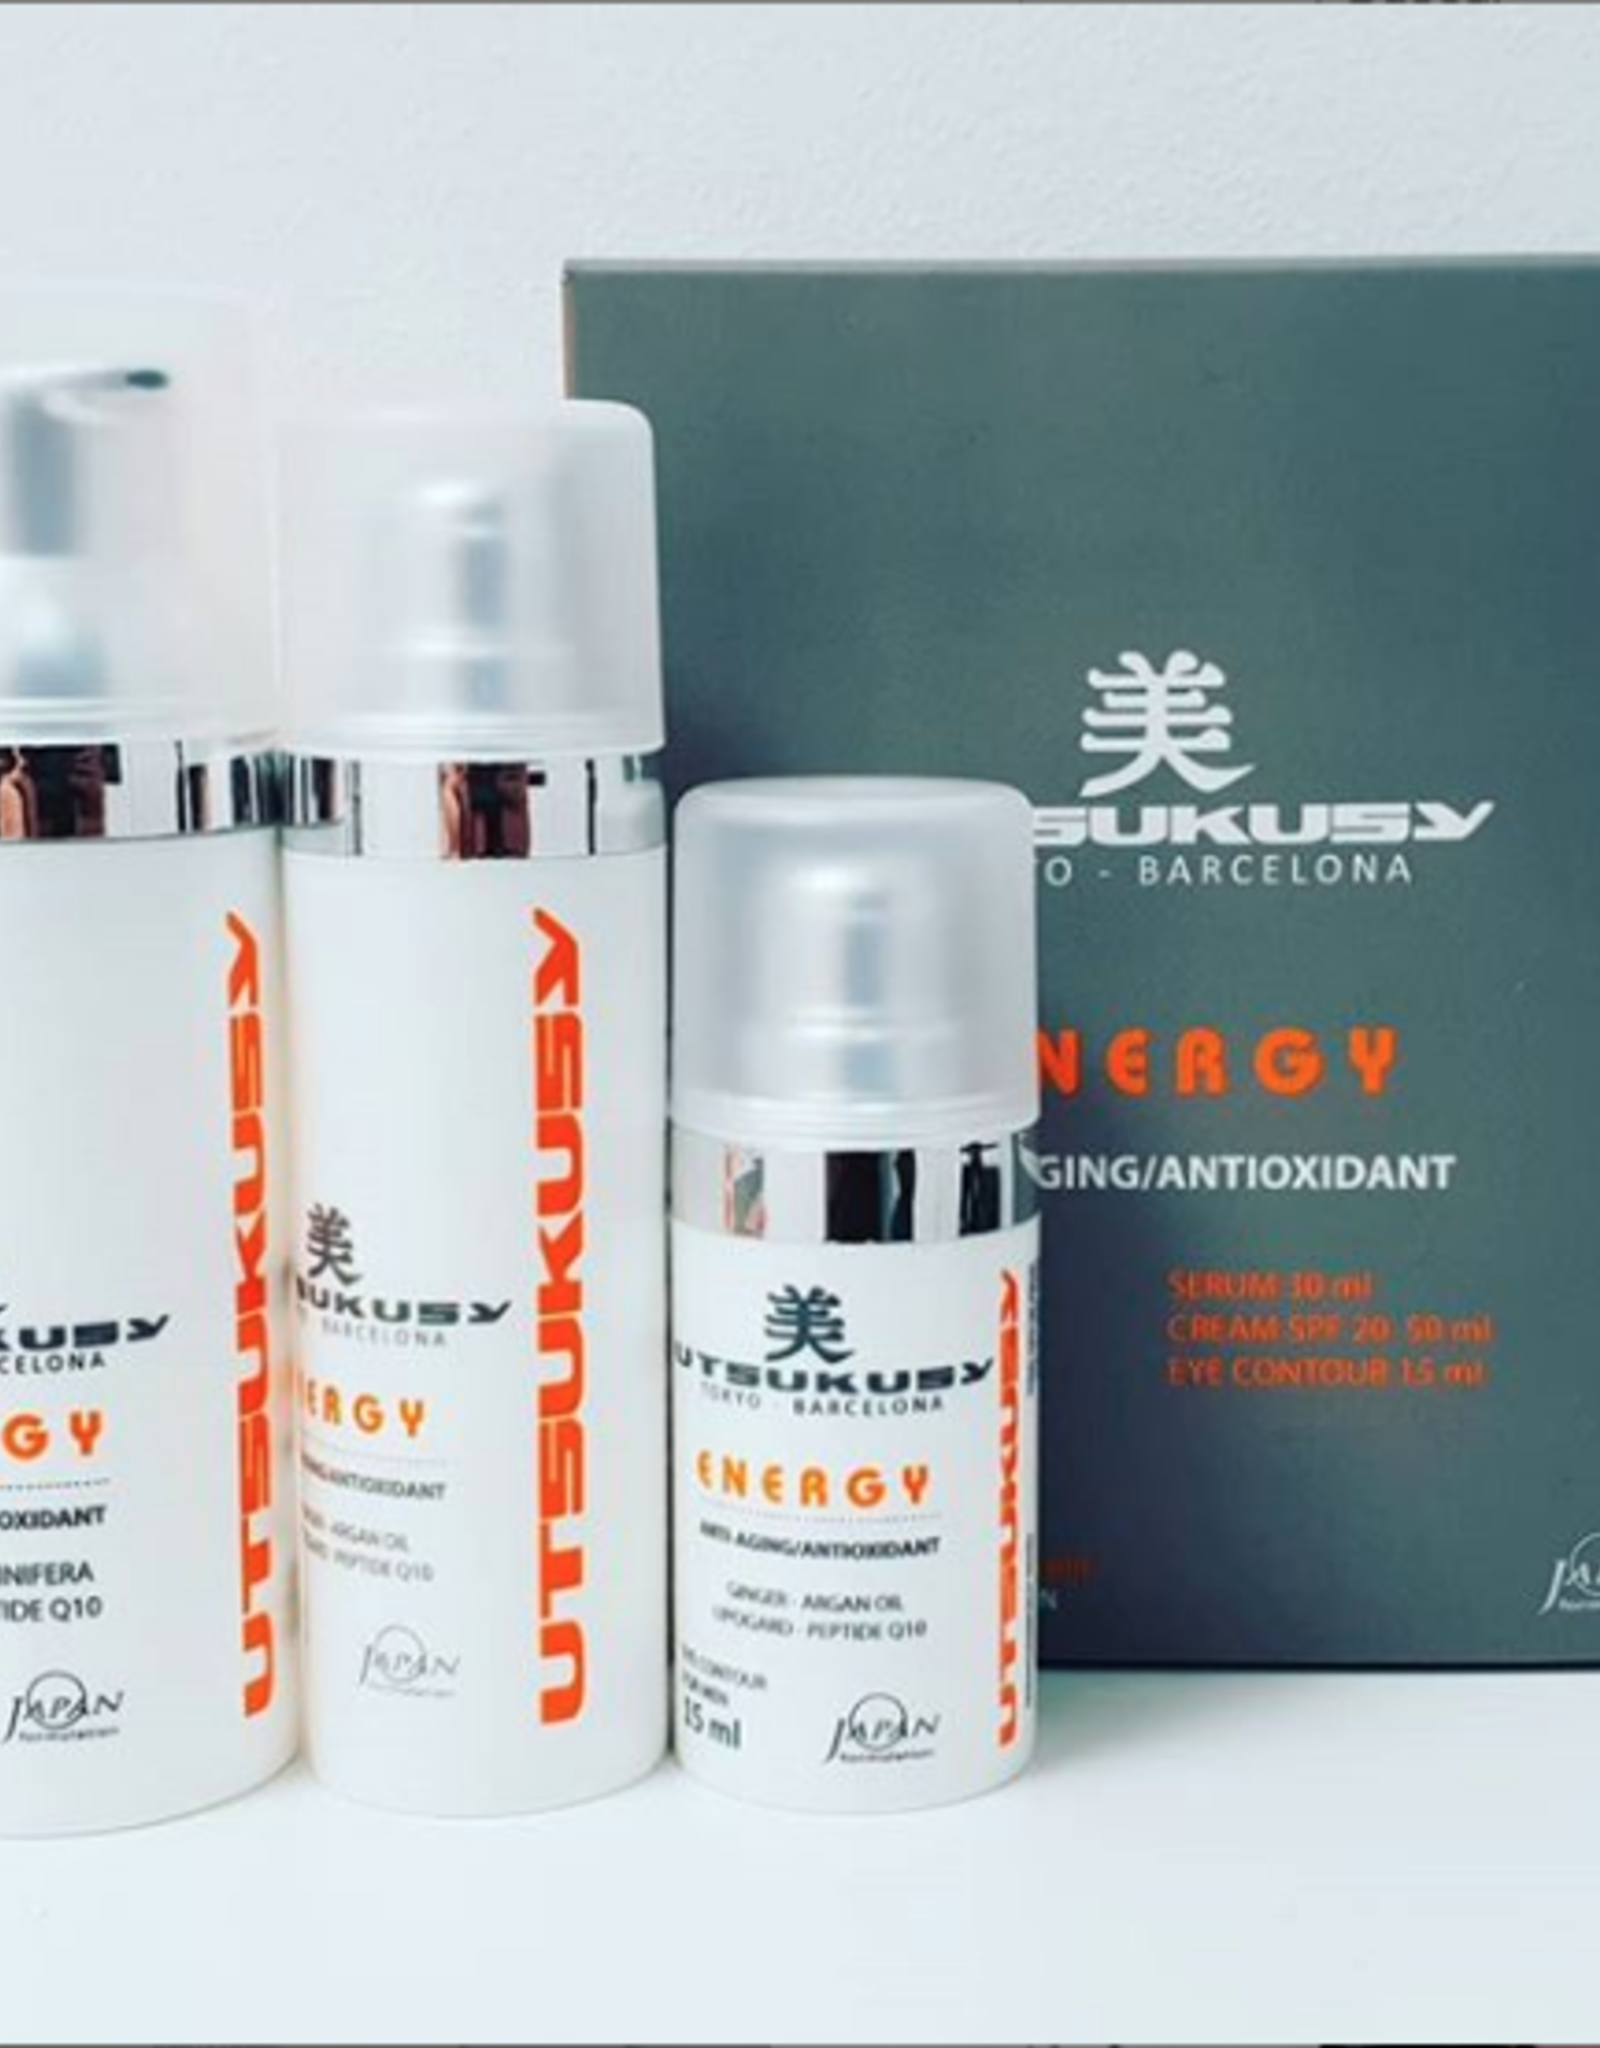 Utsukusy Energy For Men home care kit